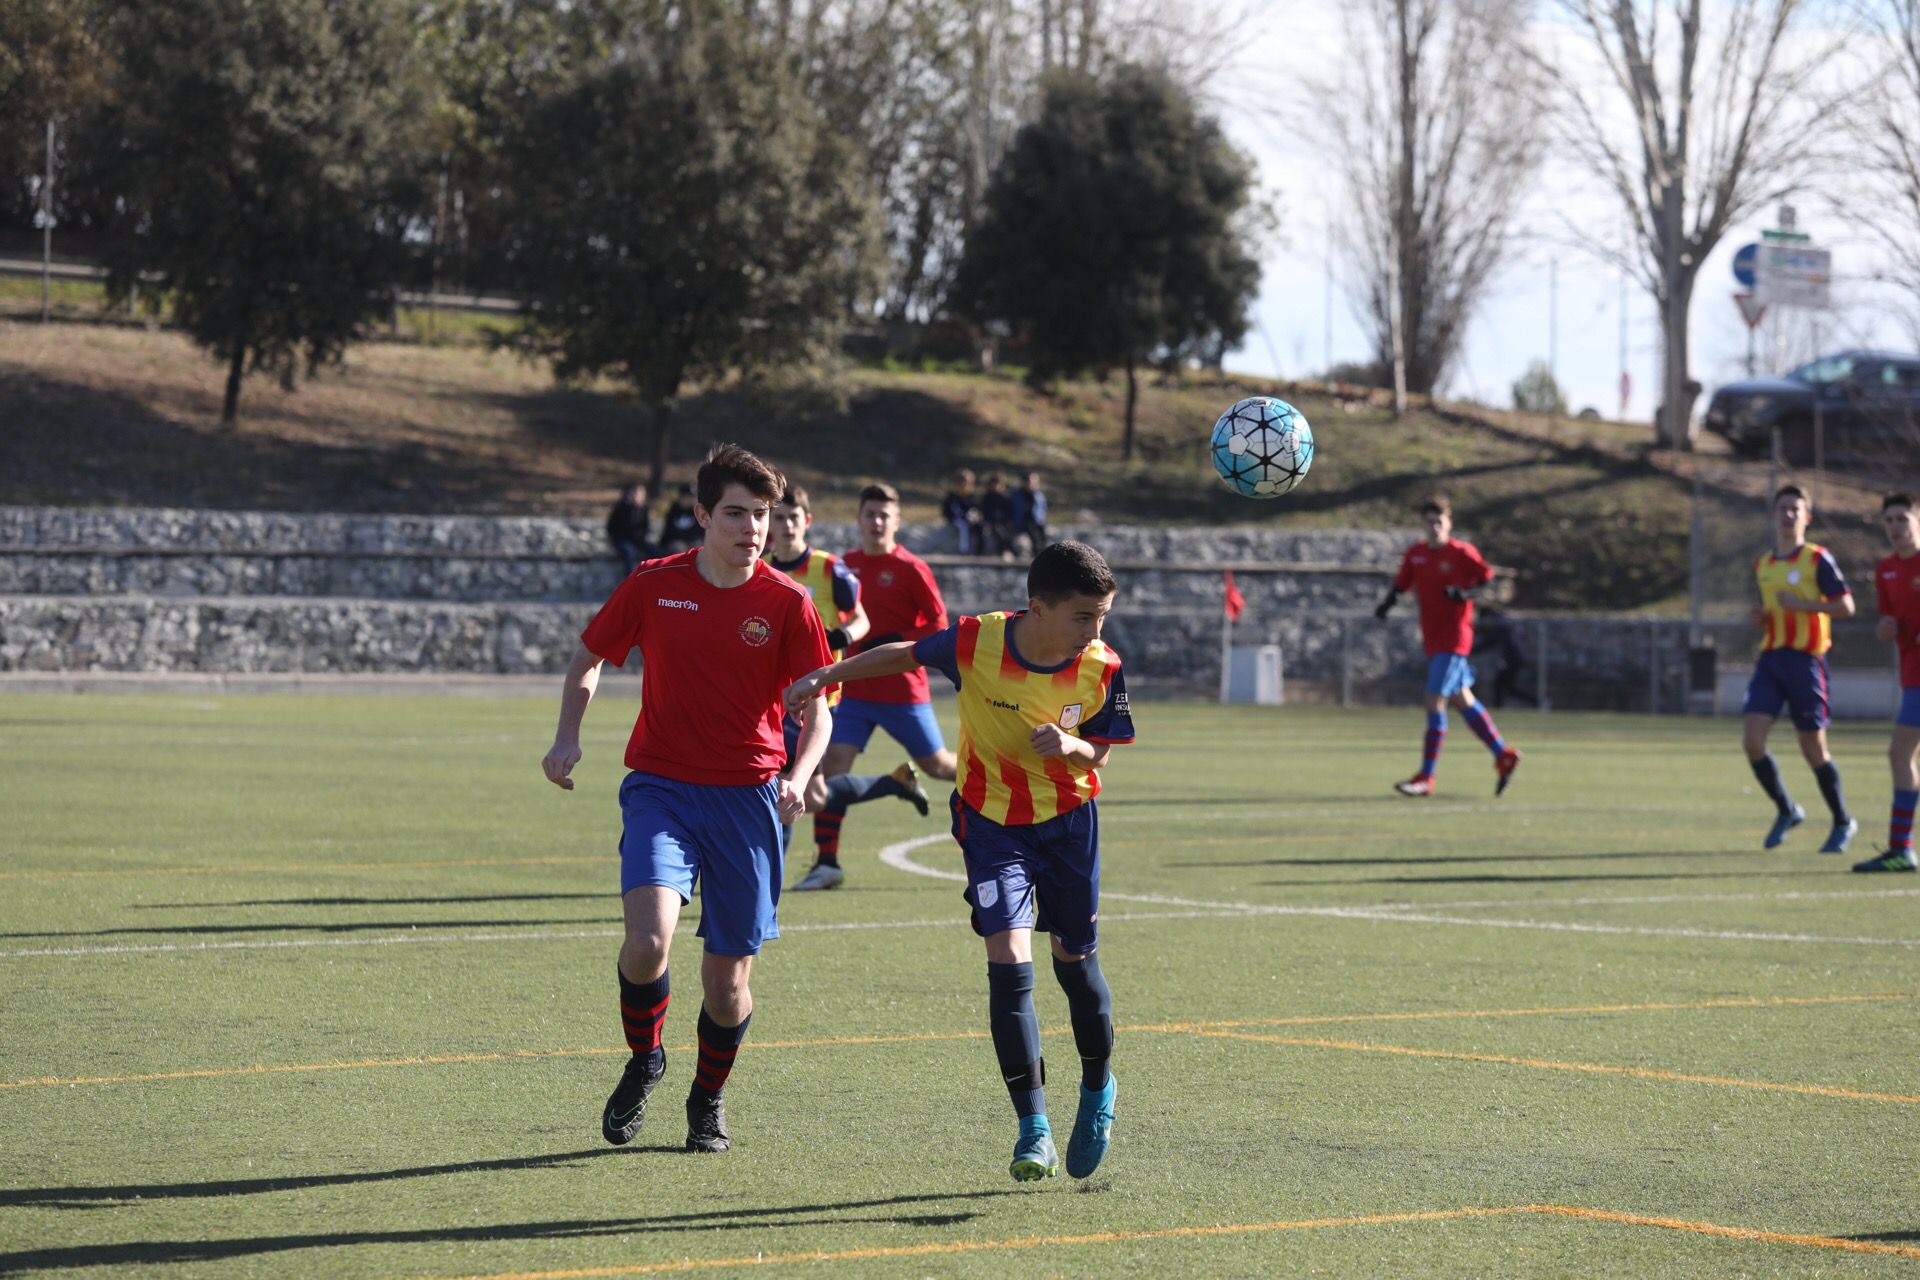 L'equip juvenil A de la PB Sant Cugat-EF Hristo Stòitxkov ha guanyat (5-1) a la selecció comarcal del Vallès Occidental cadet. FOTO: Lali Puig